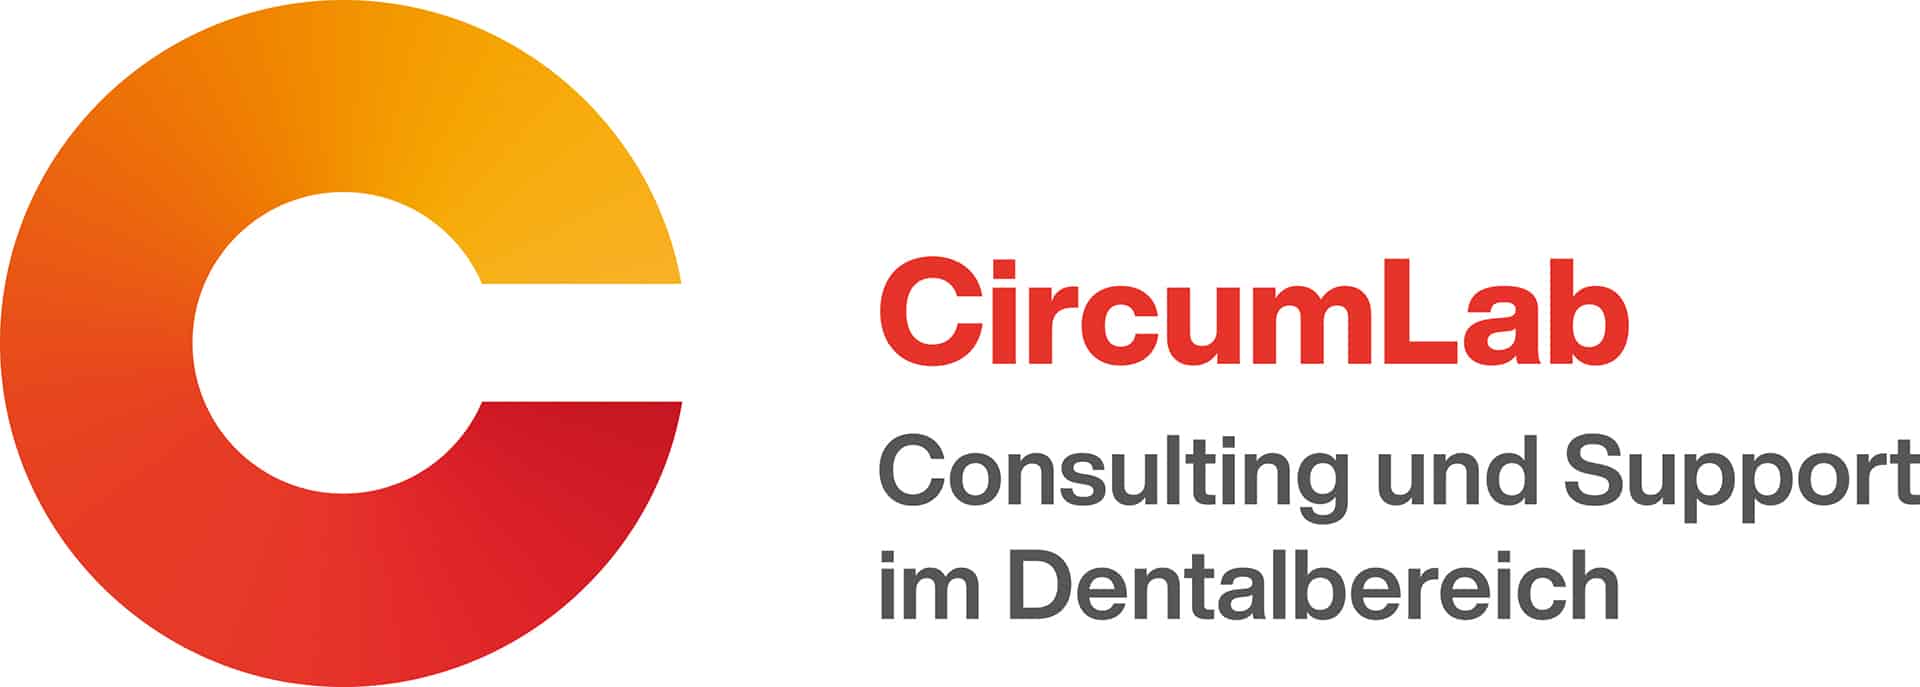 CircumLab-Logo